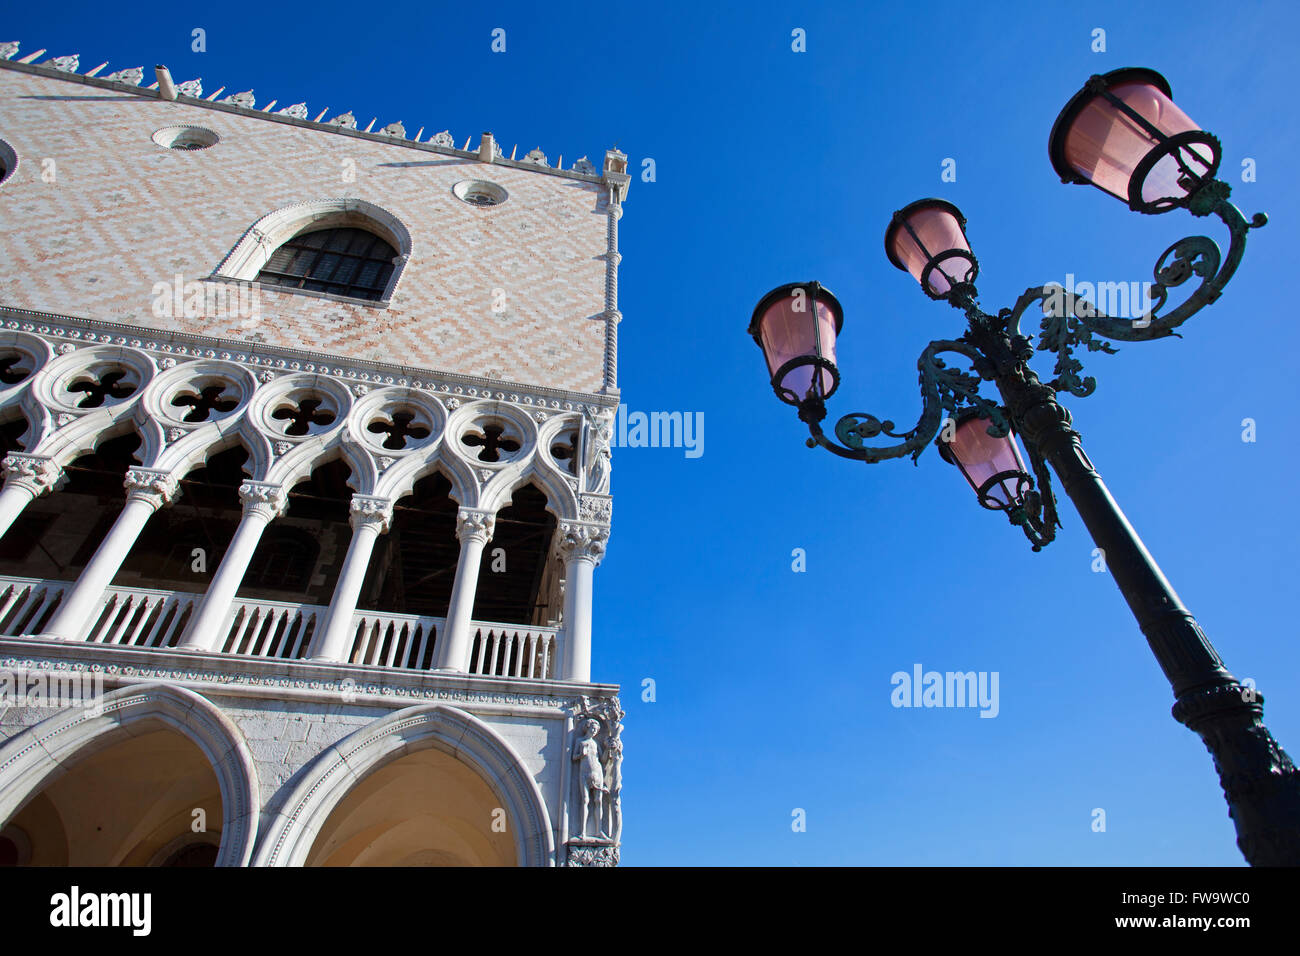 Un detalle de la arquitectura gótica veneciana sobre la fachada exterior del Palacio Ducal (Palazzo Ducale), Piazzetta San Marco, Venecia, Veneto, Italia. Foto de stock